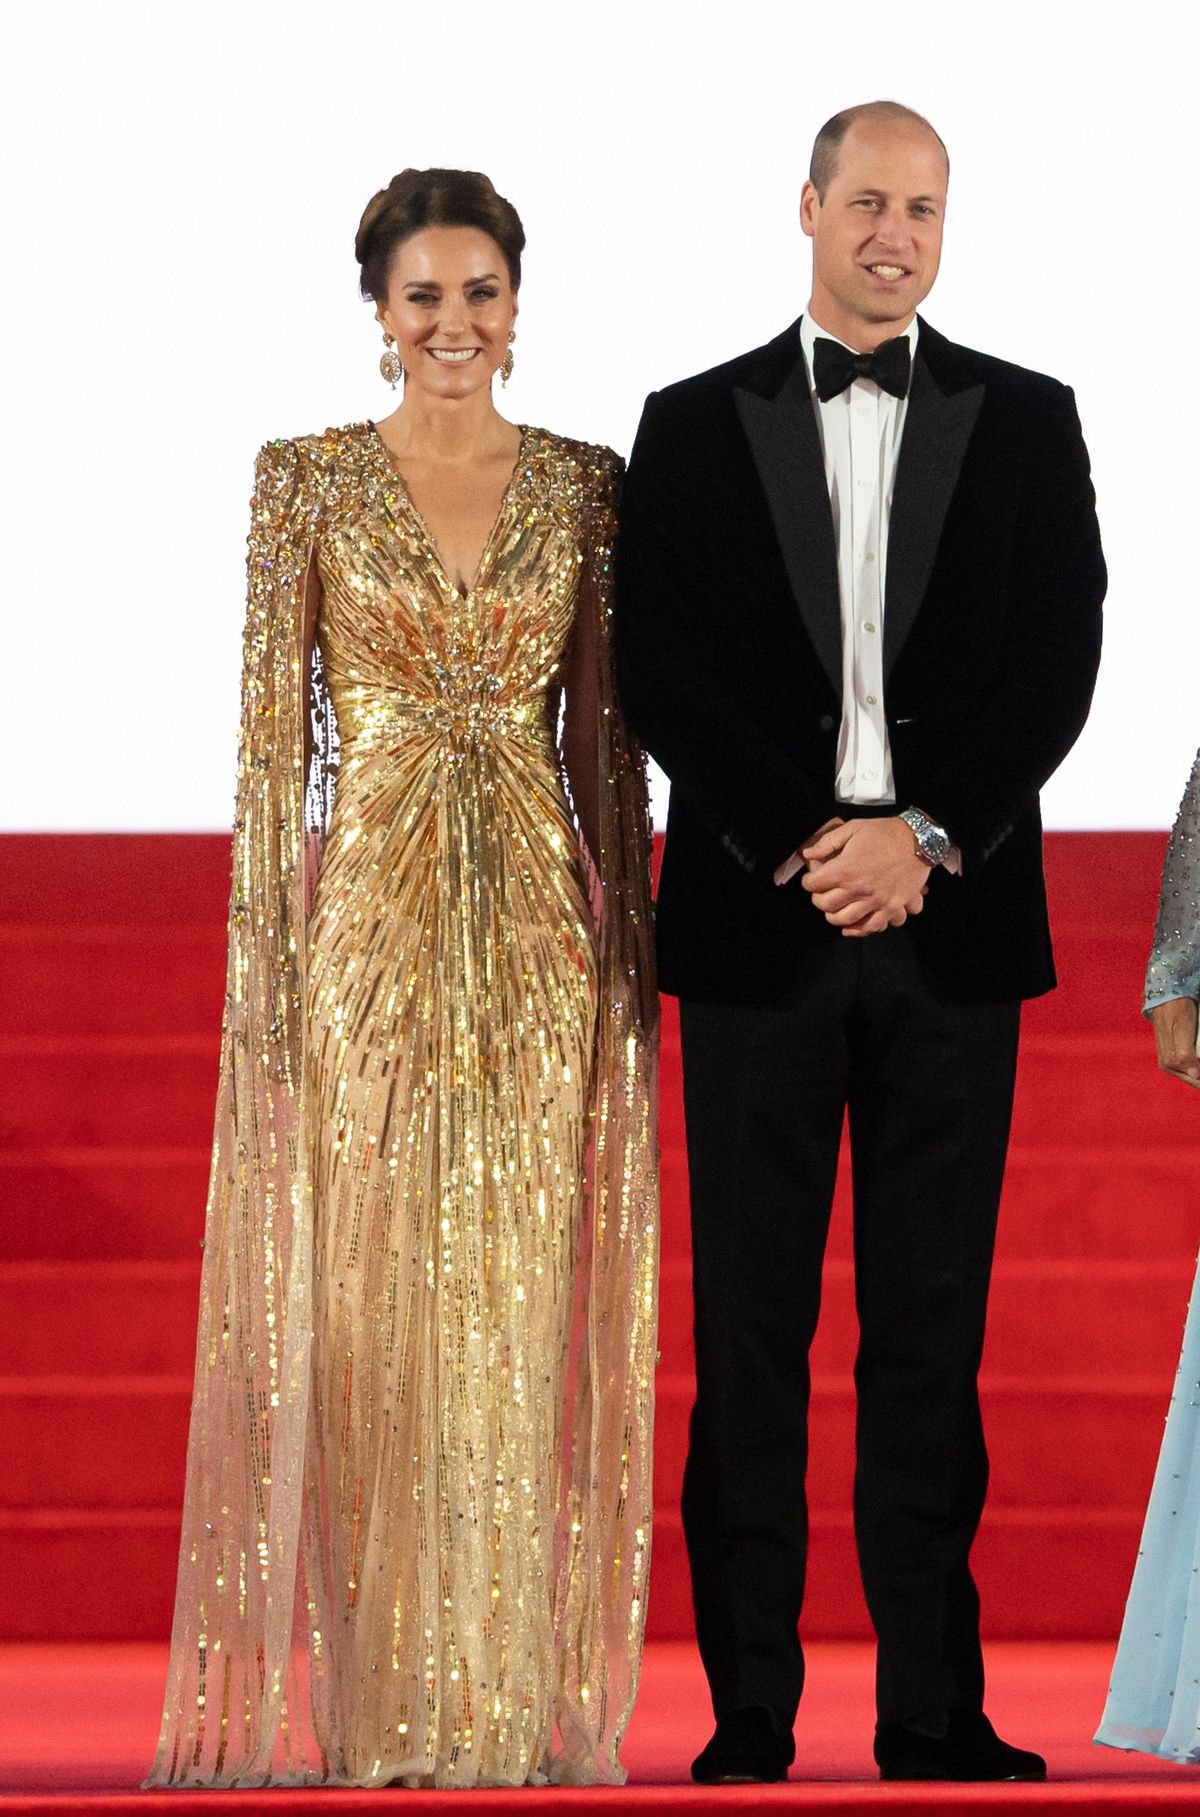 Το Cape Gown της Kate Middleton είναι η πιο τολμηρή εμφάνιση της στο κόκκινο χαλί